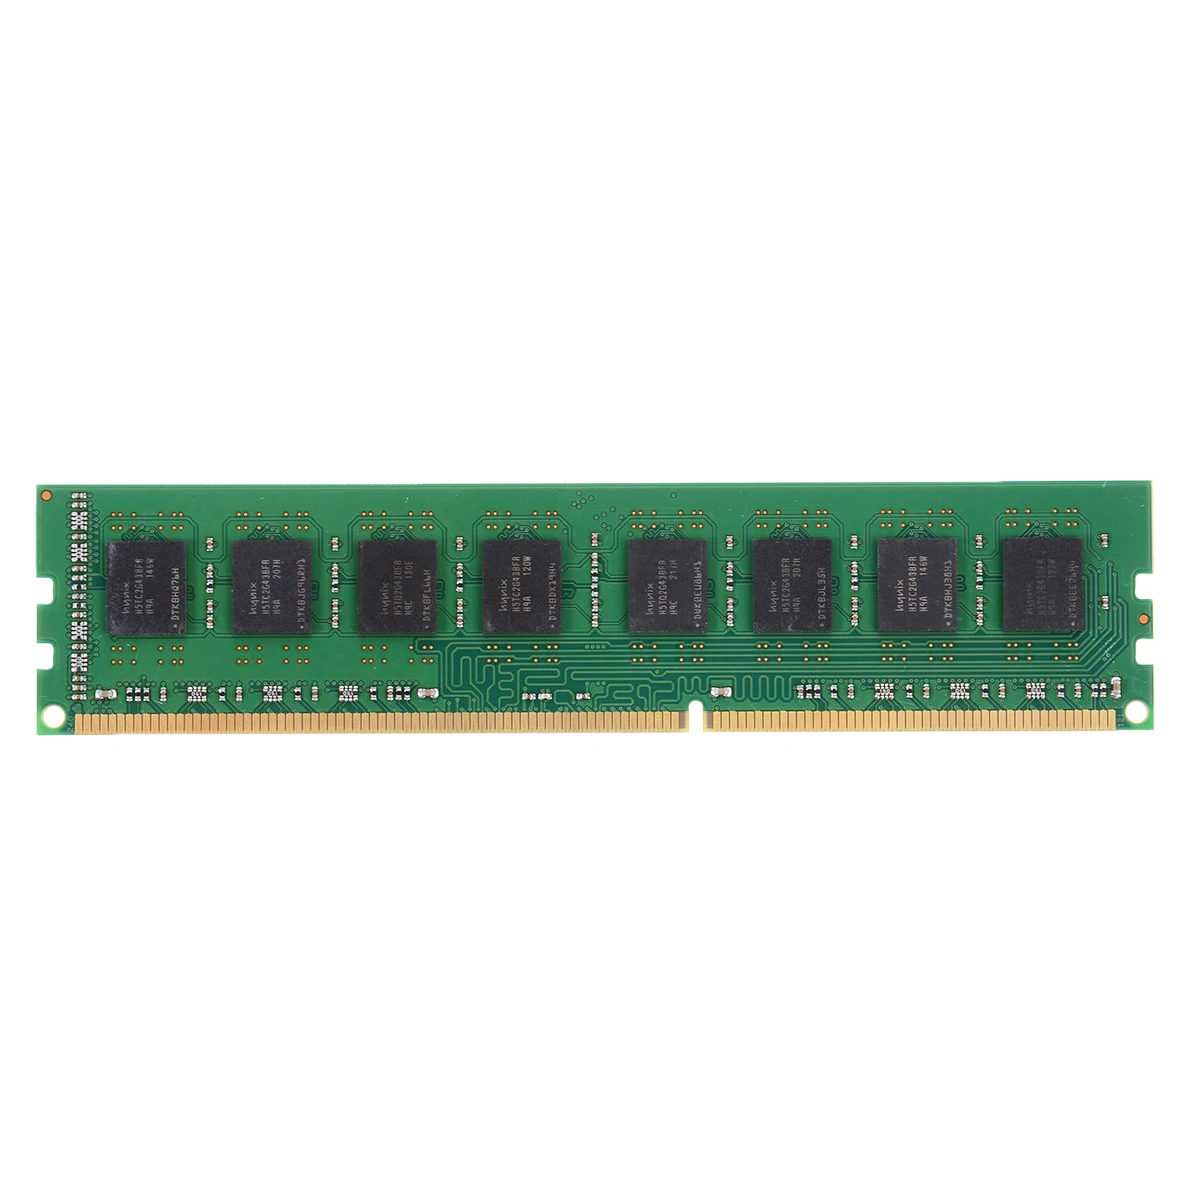 Pohiks 4 GB настольная память PC3-10600 DDR3 1333 Mhz 240Pin 4G Ram двухканальный для AMD настольного ПК DIMM памяти